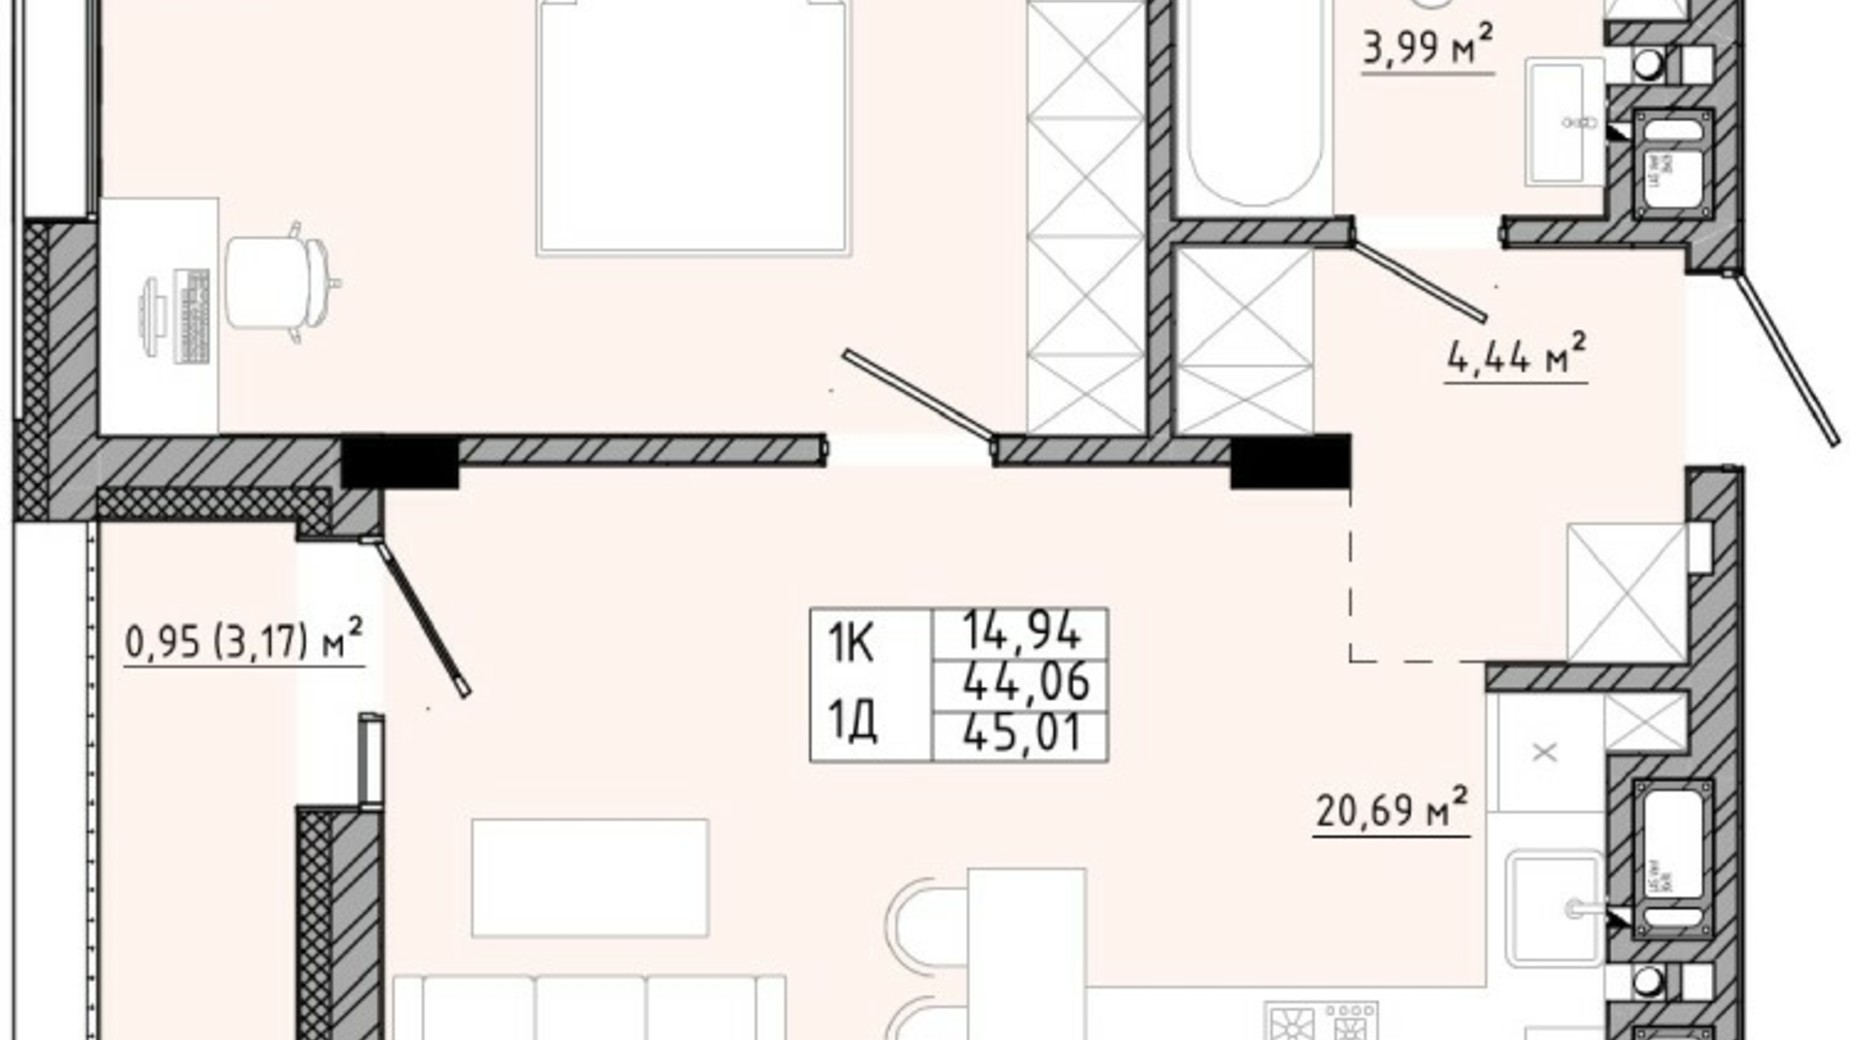 Планировка 1-комнатной квартиры в ЖК на Спортивной 45.01 м², фото 540179